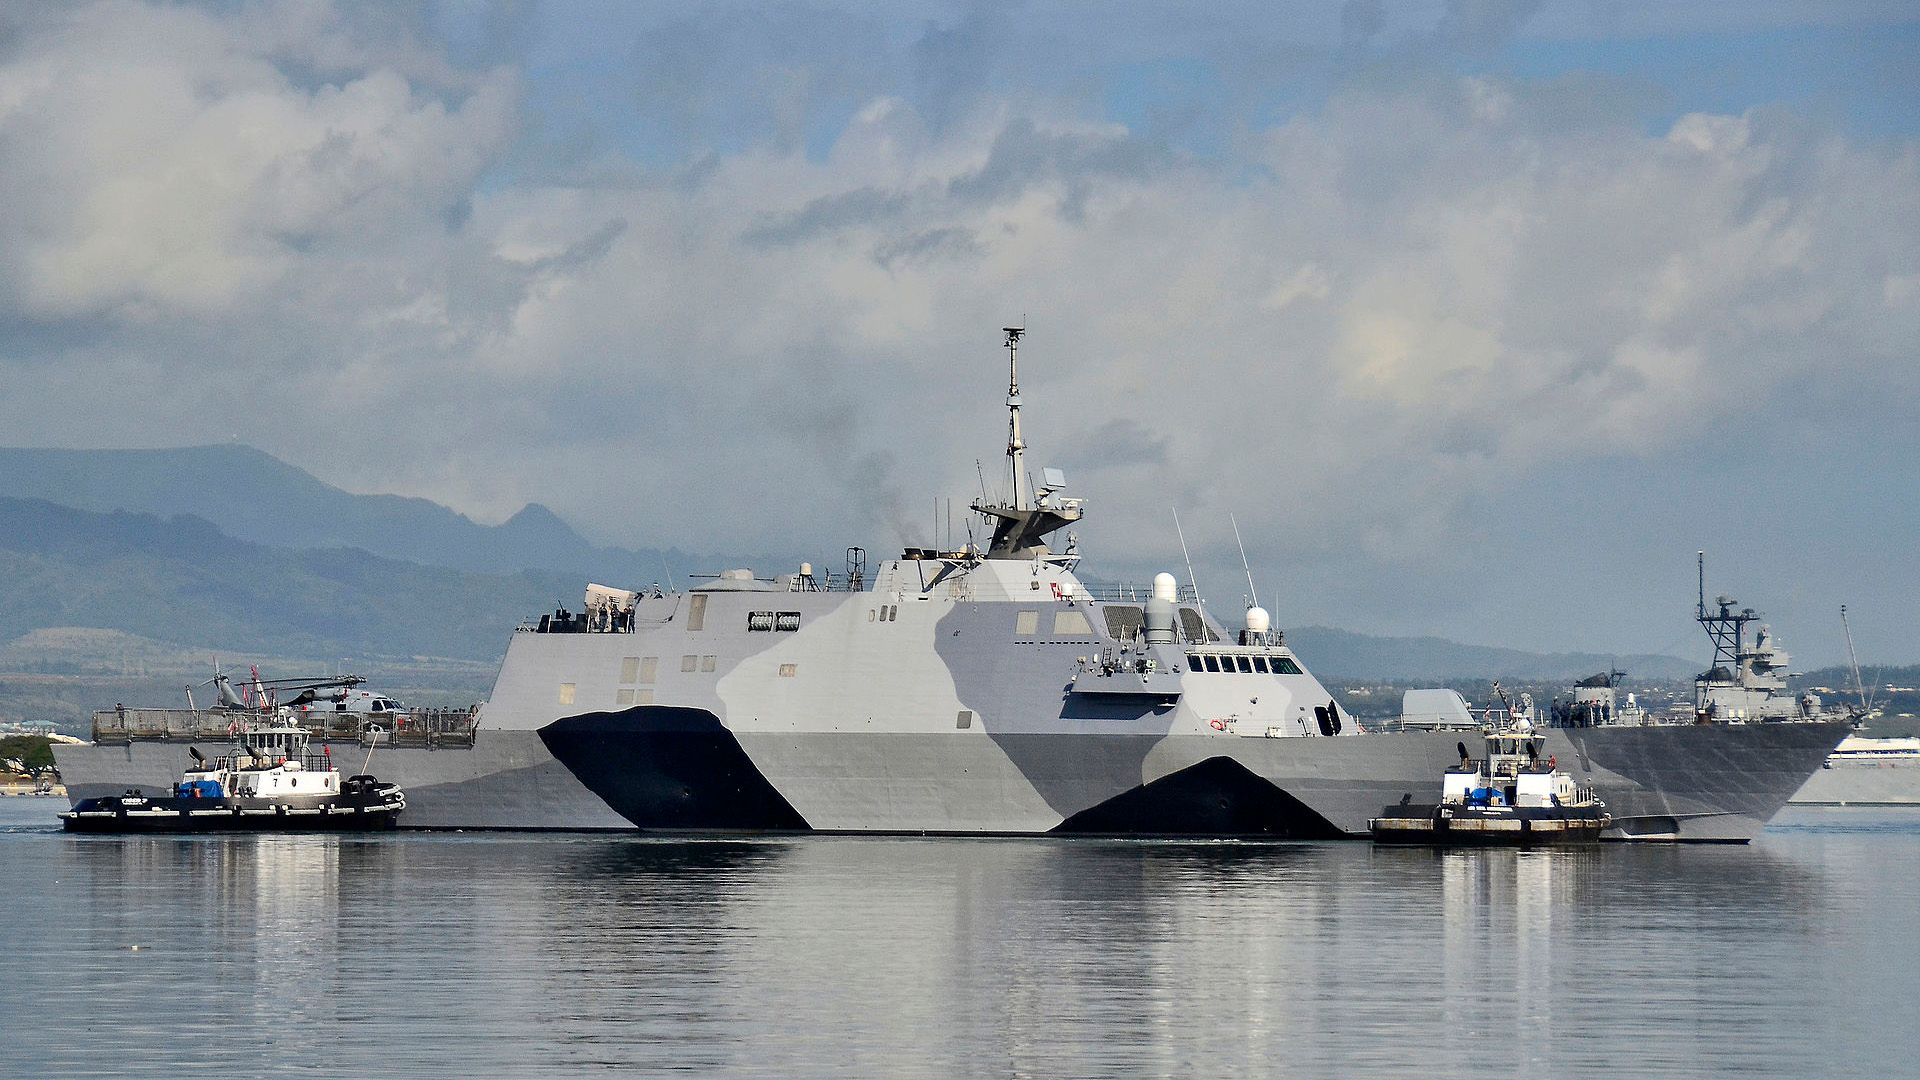 Global News: китайский корабль чуть не столкнулся с американским эсминцем в Тайваньском проливе 